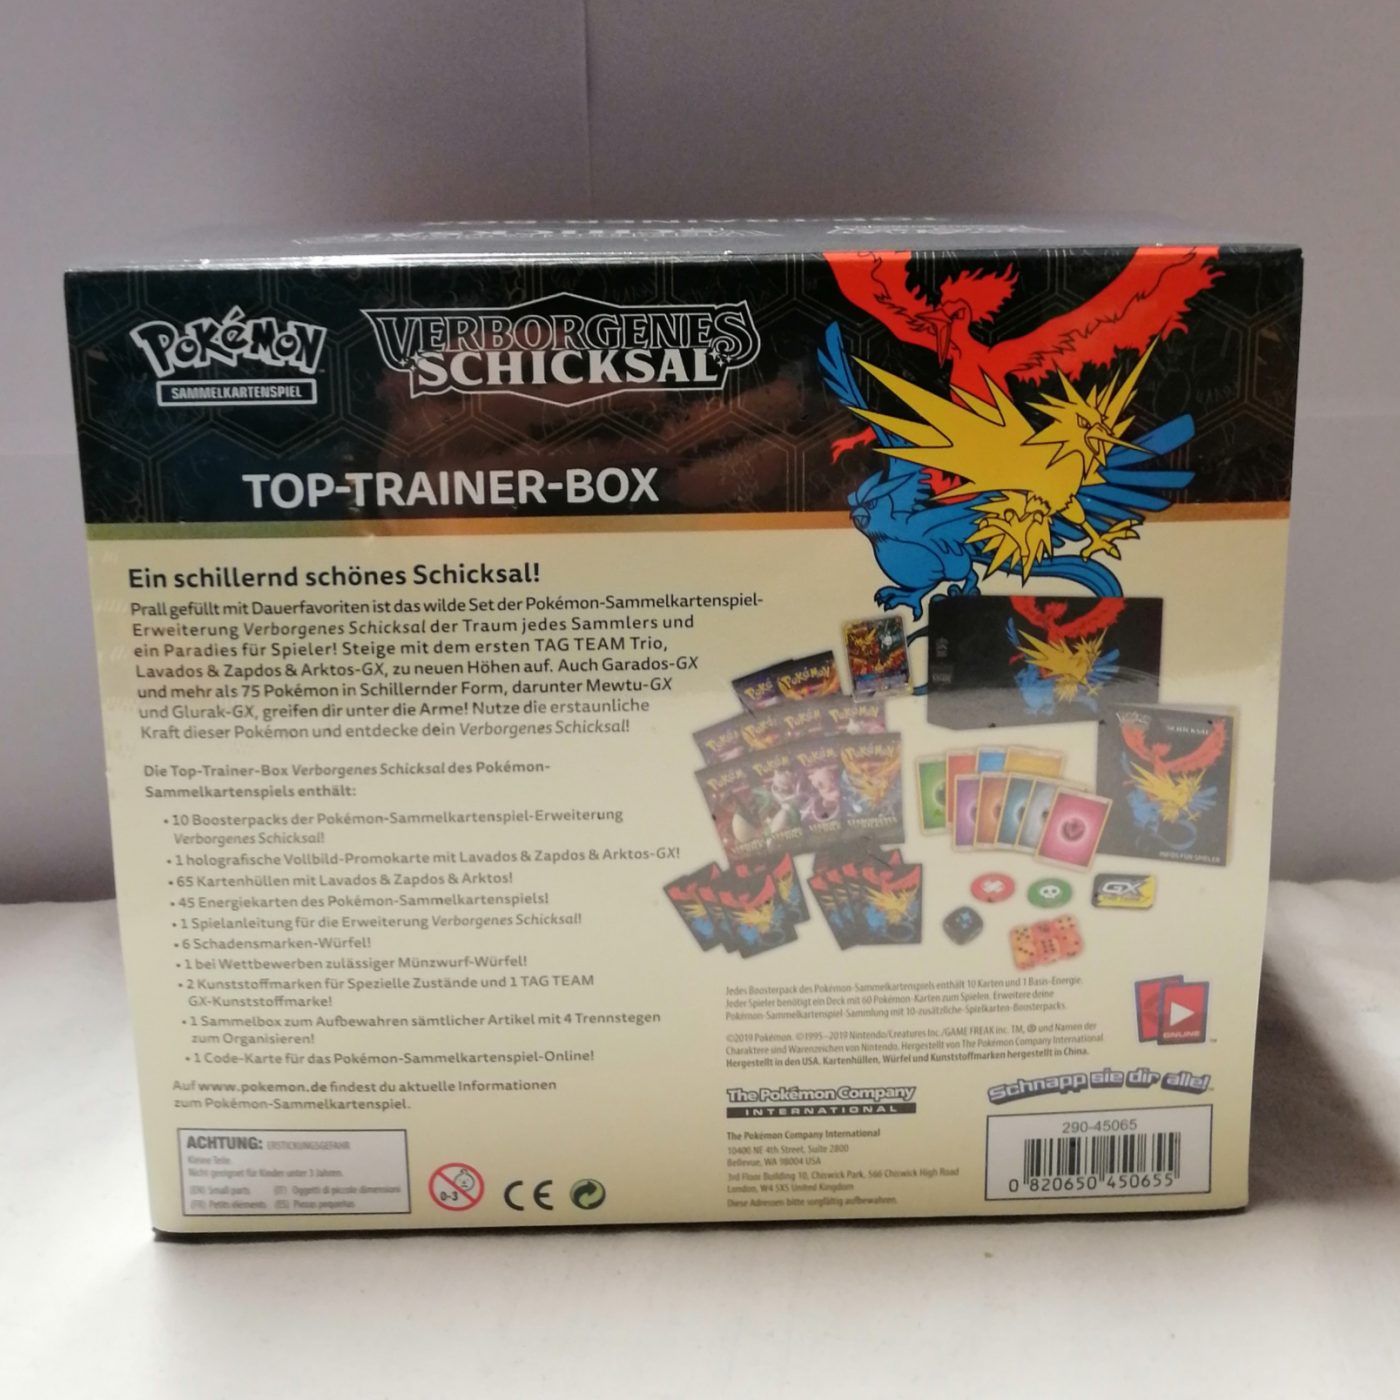 Pokémon Top-Trainer-Box: Verborgenes Schicksal hinten